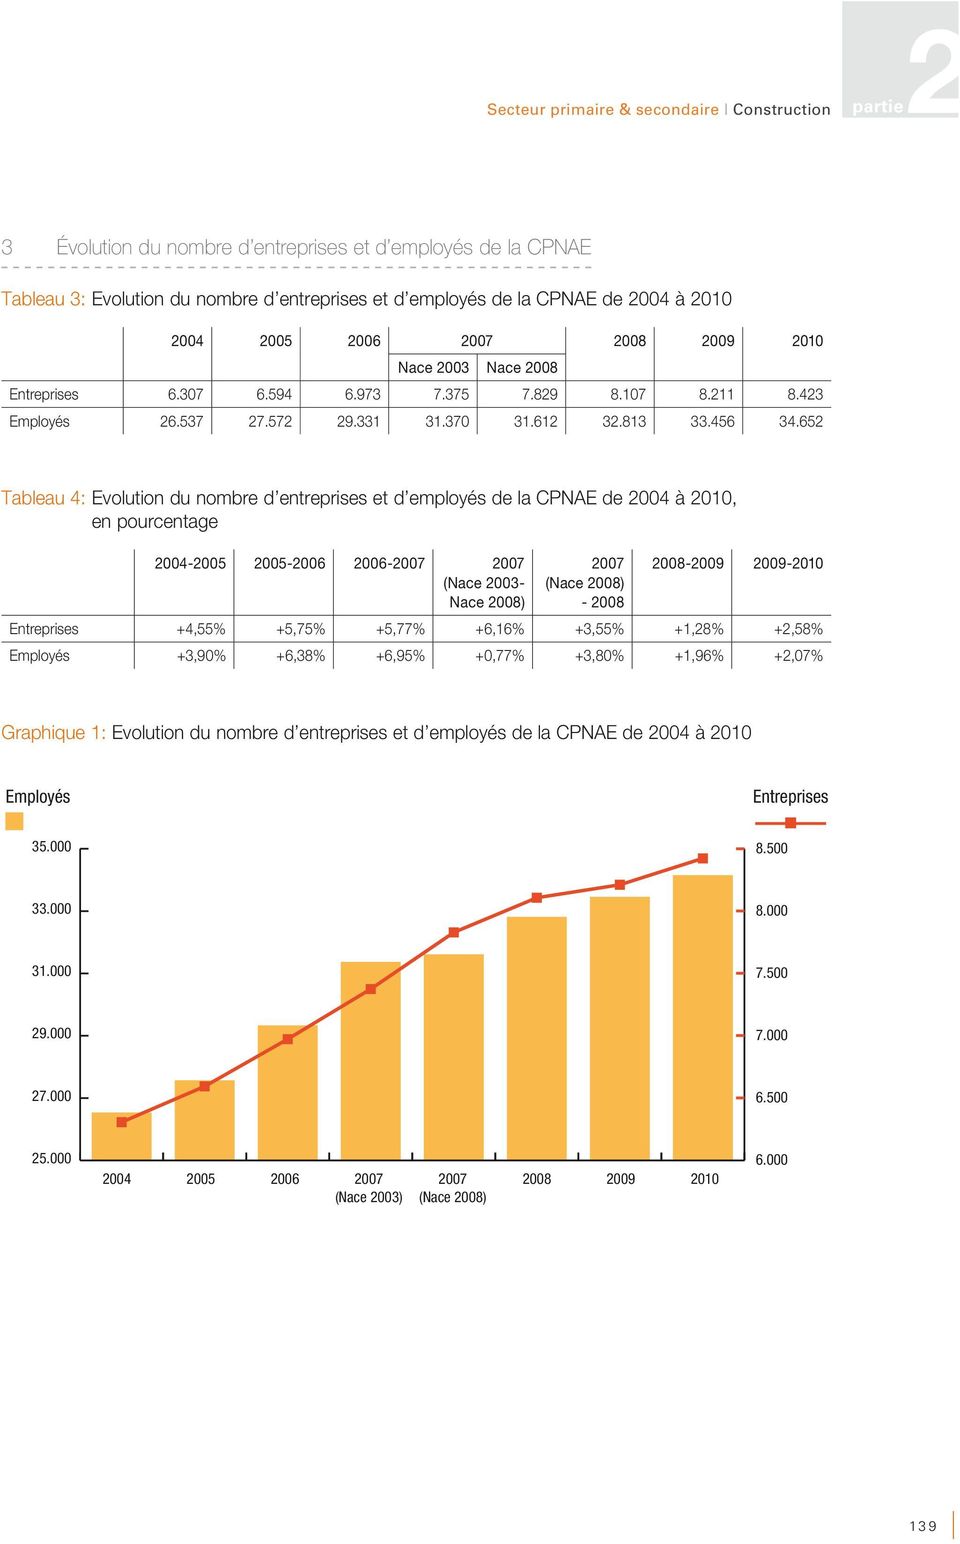 652 Tableau 4: Evolution du nombre d entreprises et d employés de la CPNAE de 2004 à 2010, en pourcentage 2004-2005 2005-2006 2006-2007 2007 (Nace 2003- Nace 2008) 2007 (Nace 2008) - 2008 2008-2009